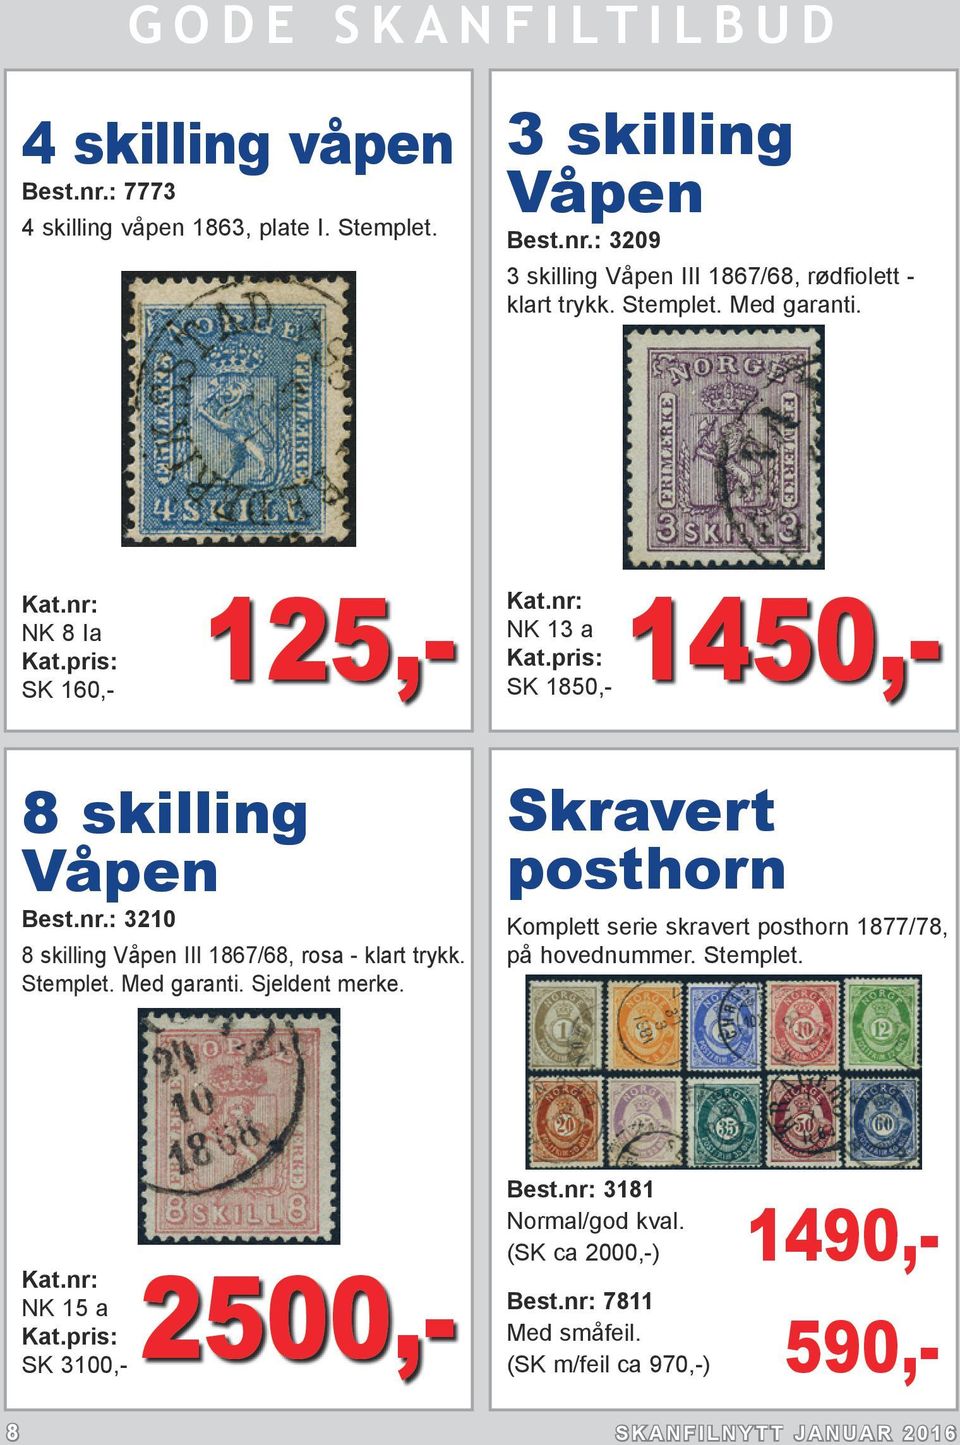 Med garanti. Sjeldent merke. Skravert posthorn Komplett serie skravert posthorn 1877/78, på hovednummer. Stemplet.